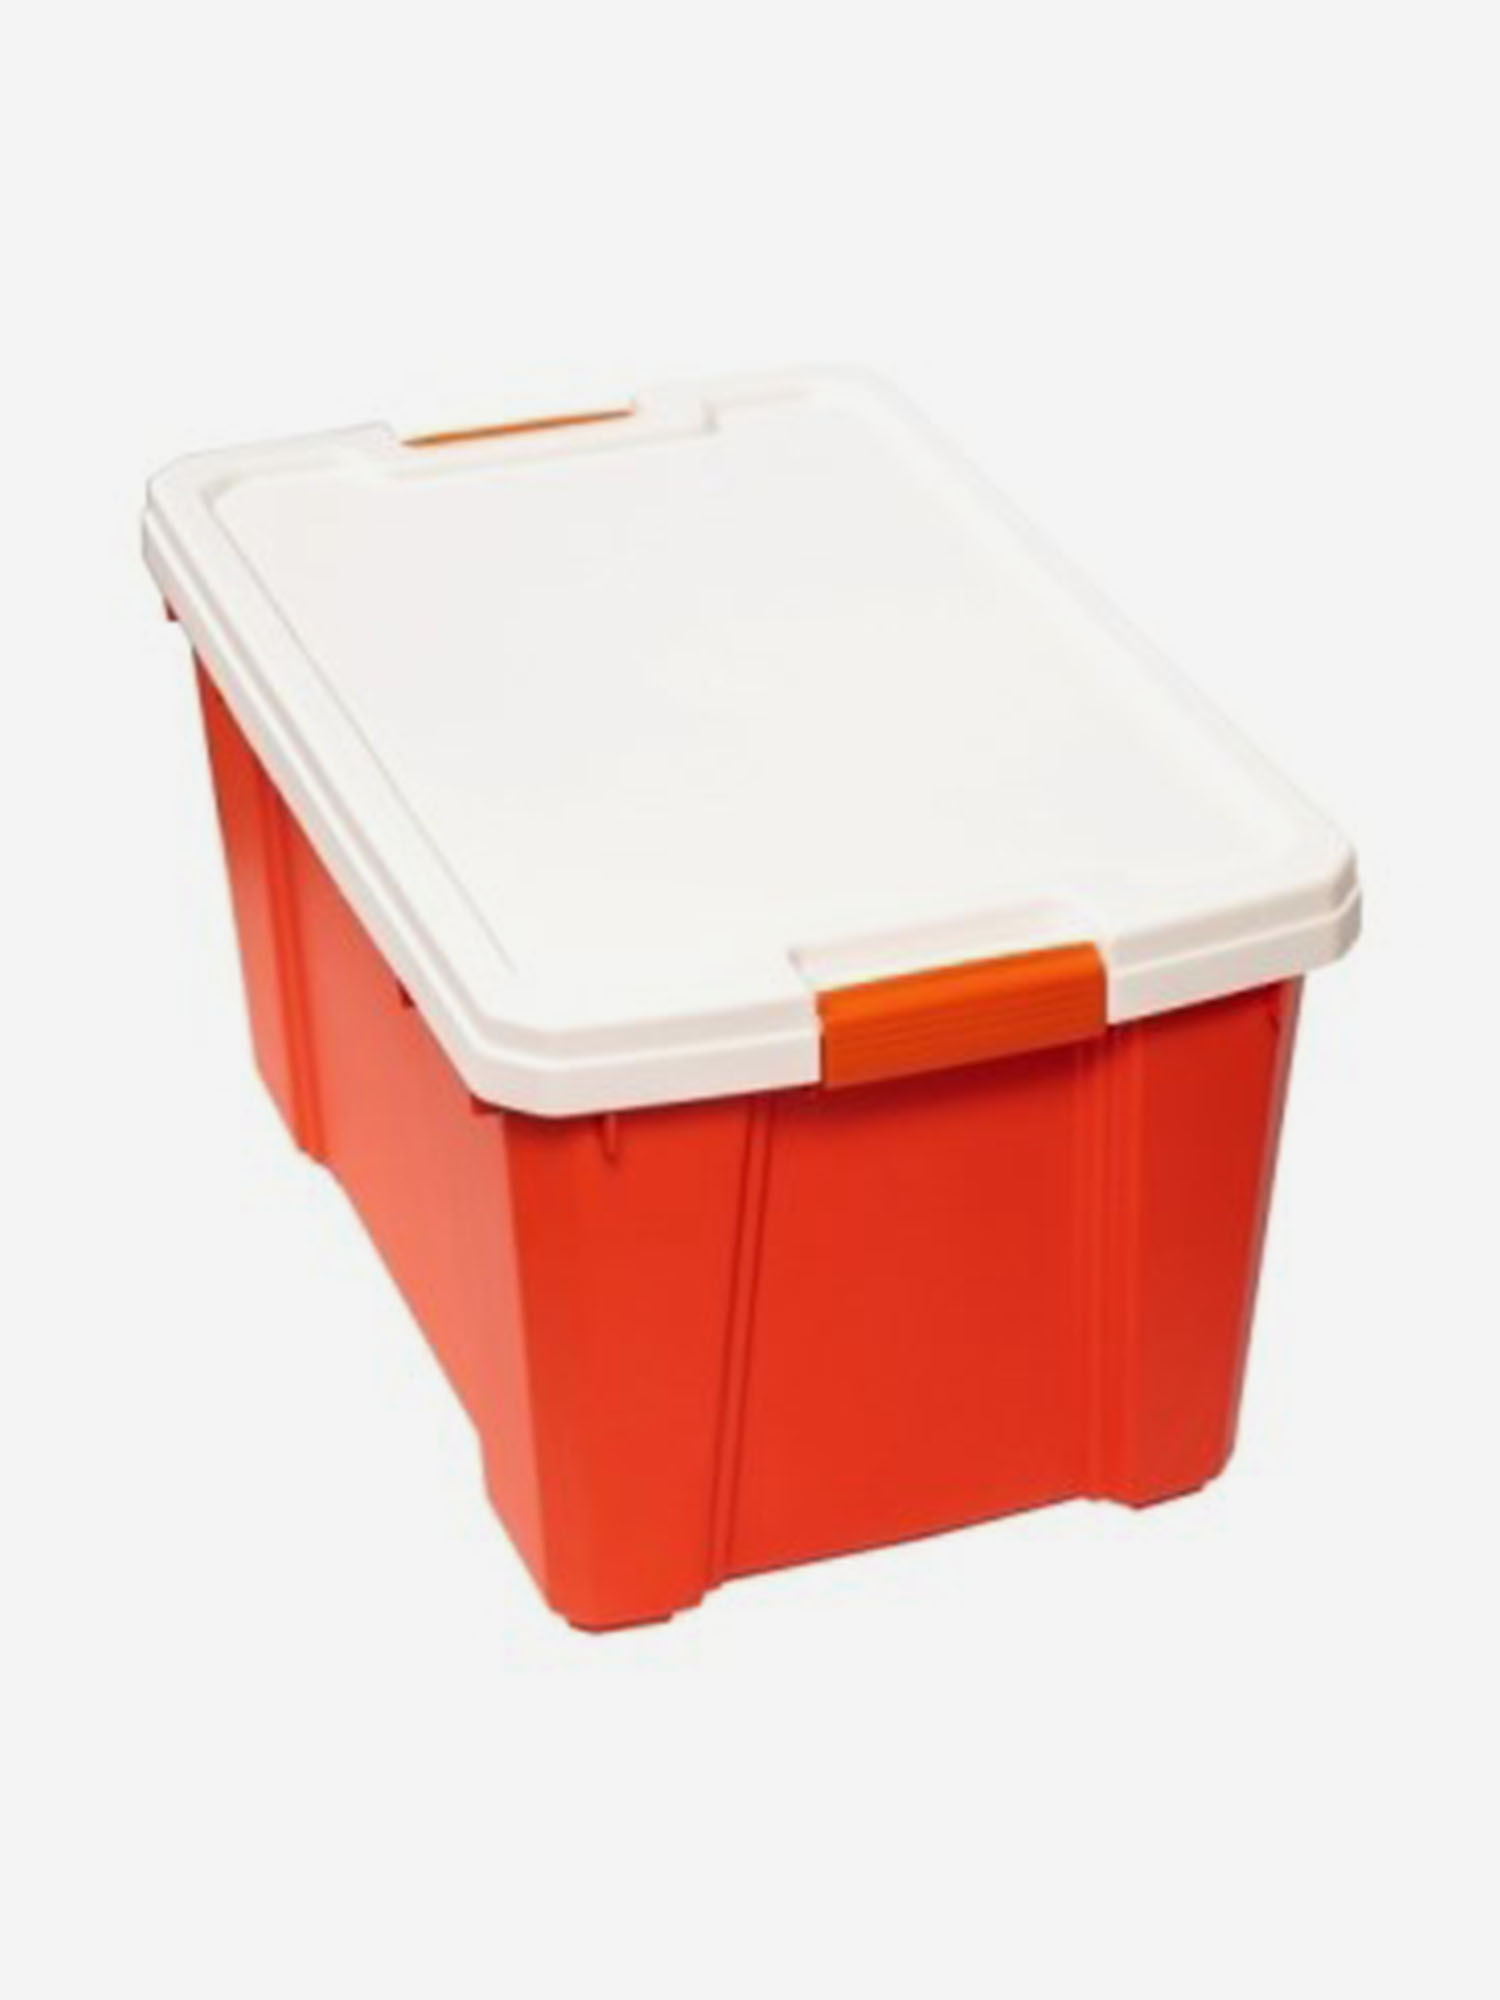 Ящик IRIS OHYAMA для x ранения, белый/оранжевый, 56 л, 59,1 x 38,8 x 33,2 см, Оранжевый ящик для выращивания зеленого лука 29 × 16 × 8 5 см 2 5 л 10 лунок оранжевый greengo